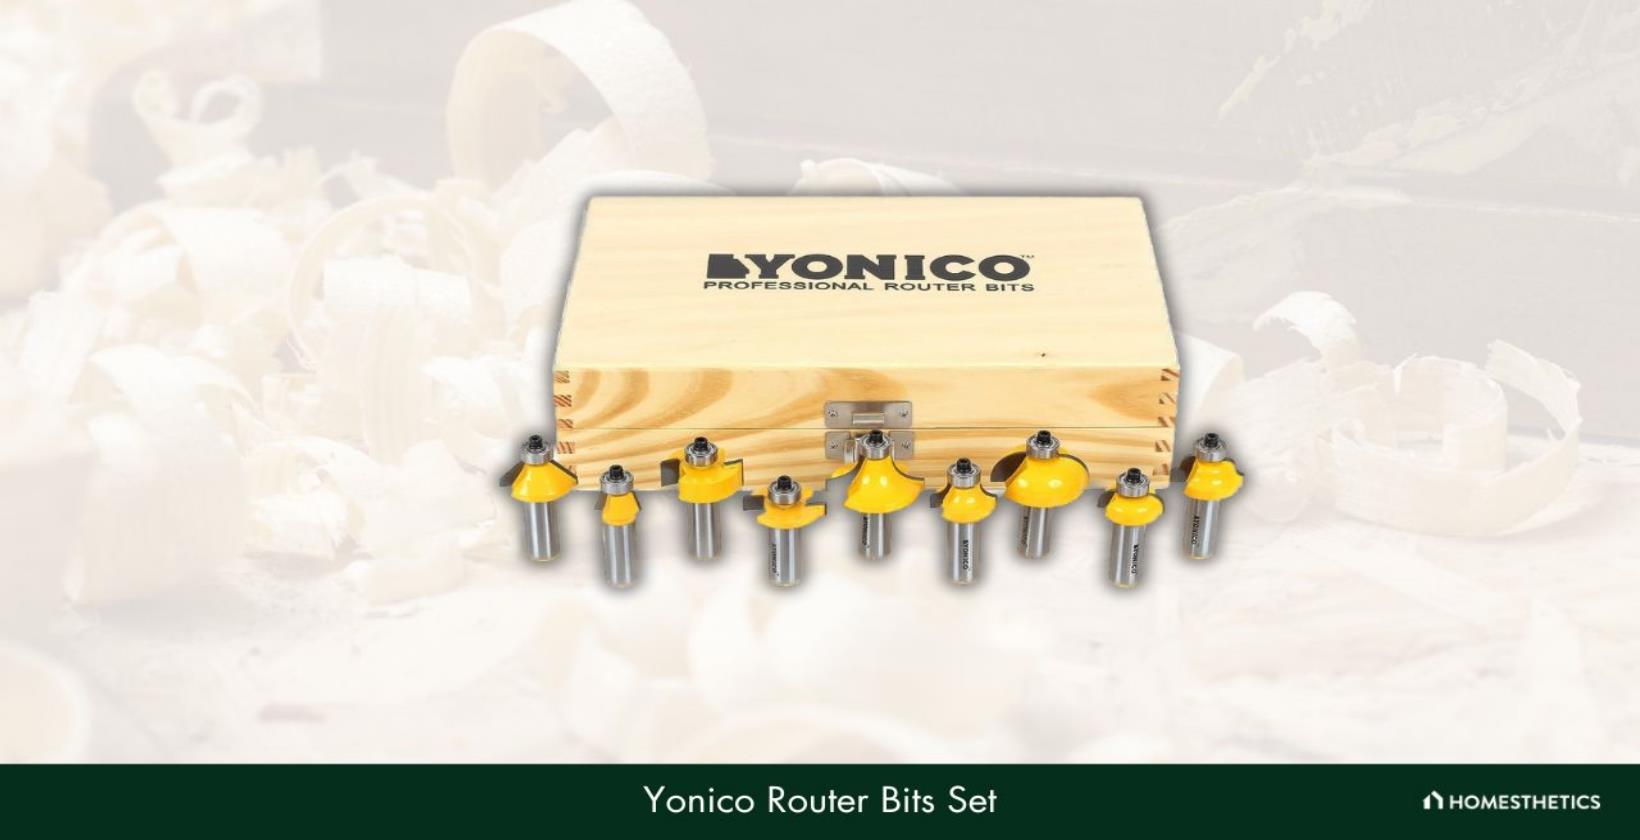 8. Yonico Router Bits Set